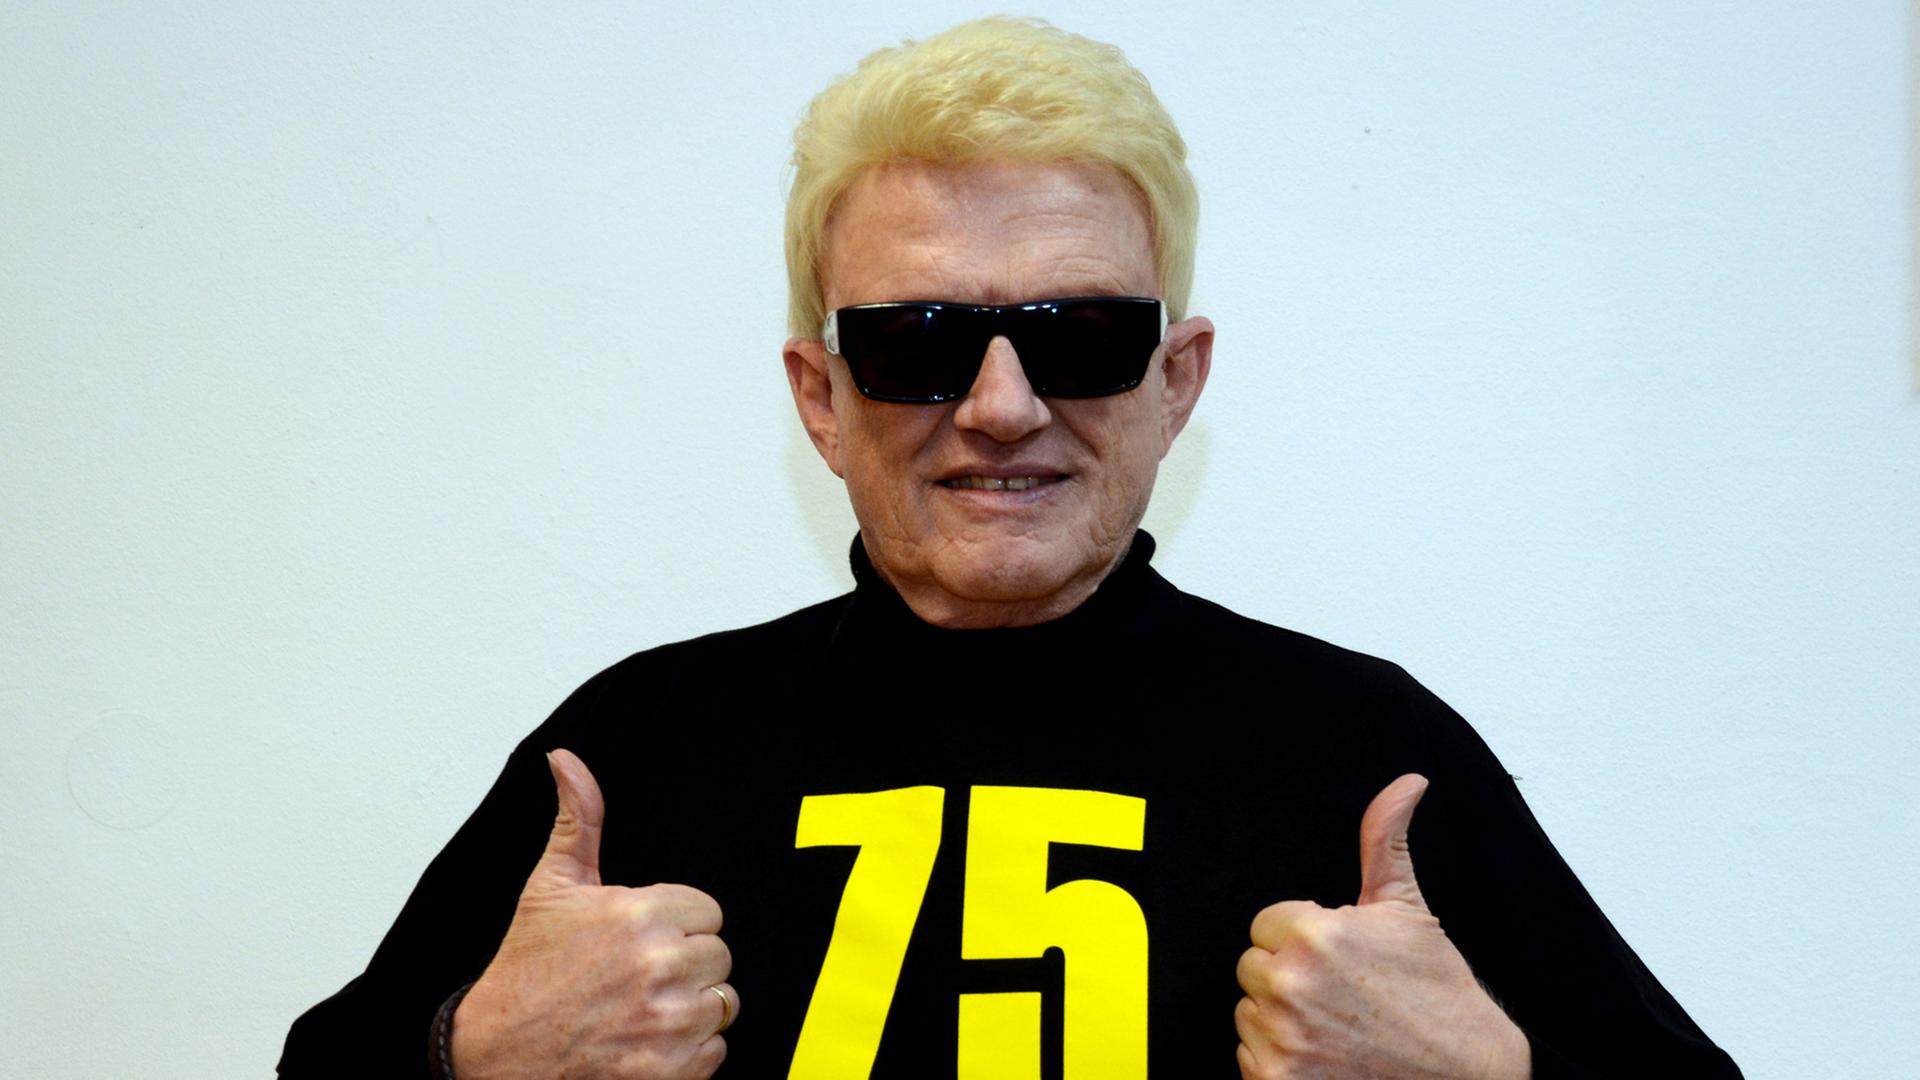 Der deutsche Sänger Heino streckt die Daumen nach oben und posiert in einem T-Shirt mit der Aufschrift "75 Jetzt erst recht".